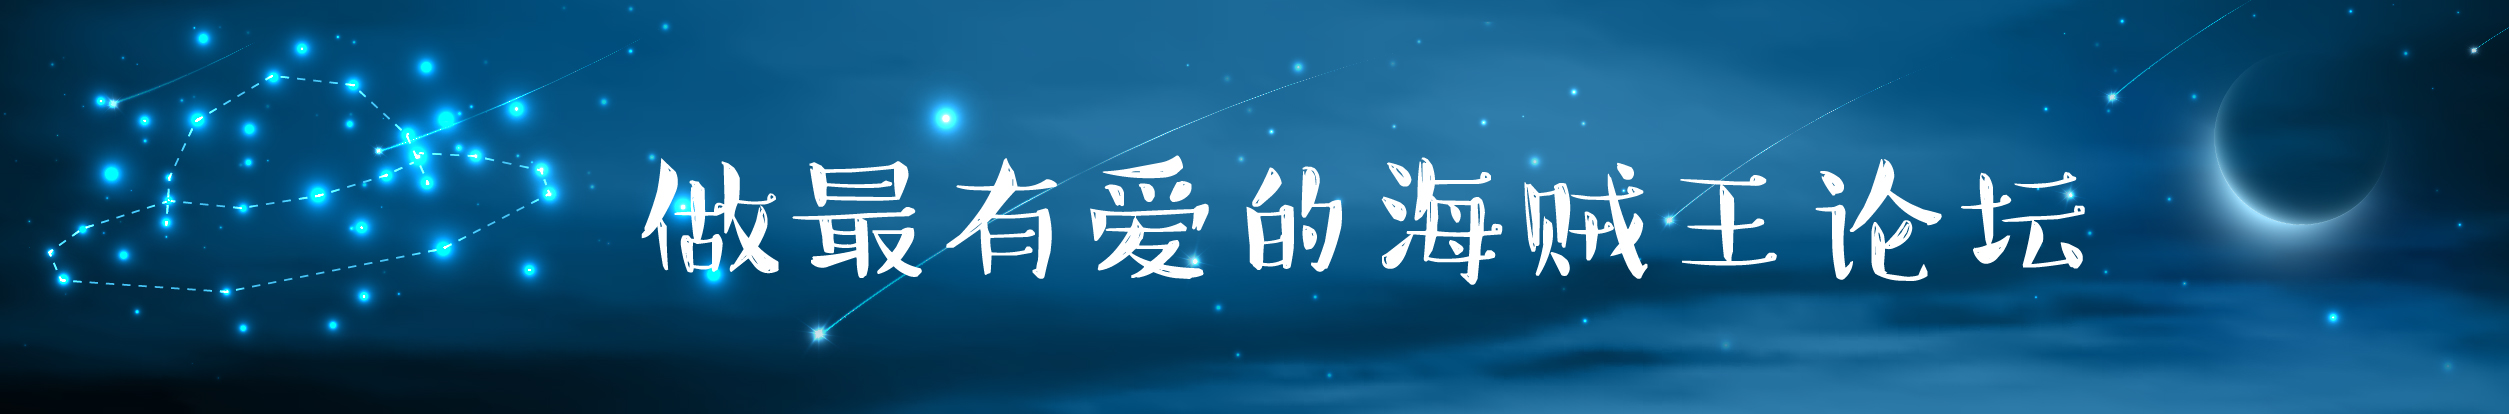 论坛logo4-02.jpg